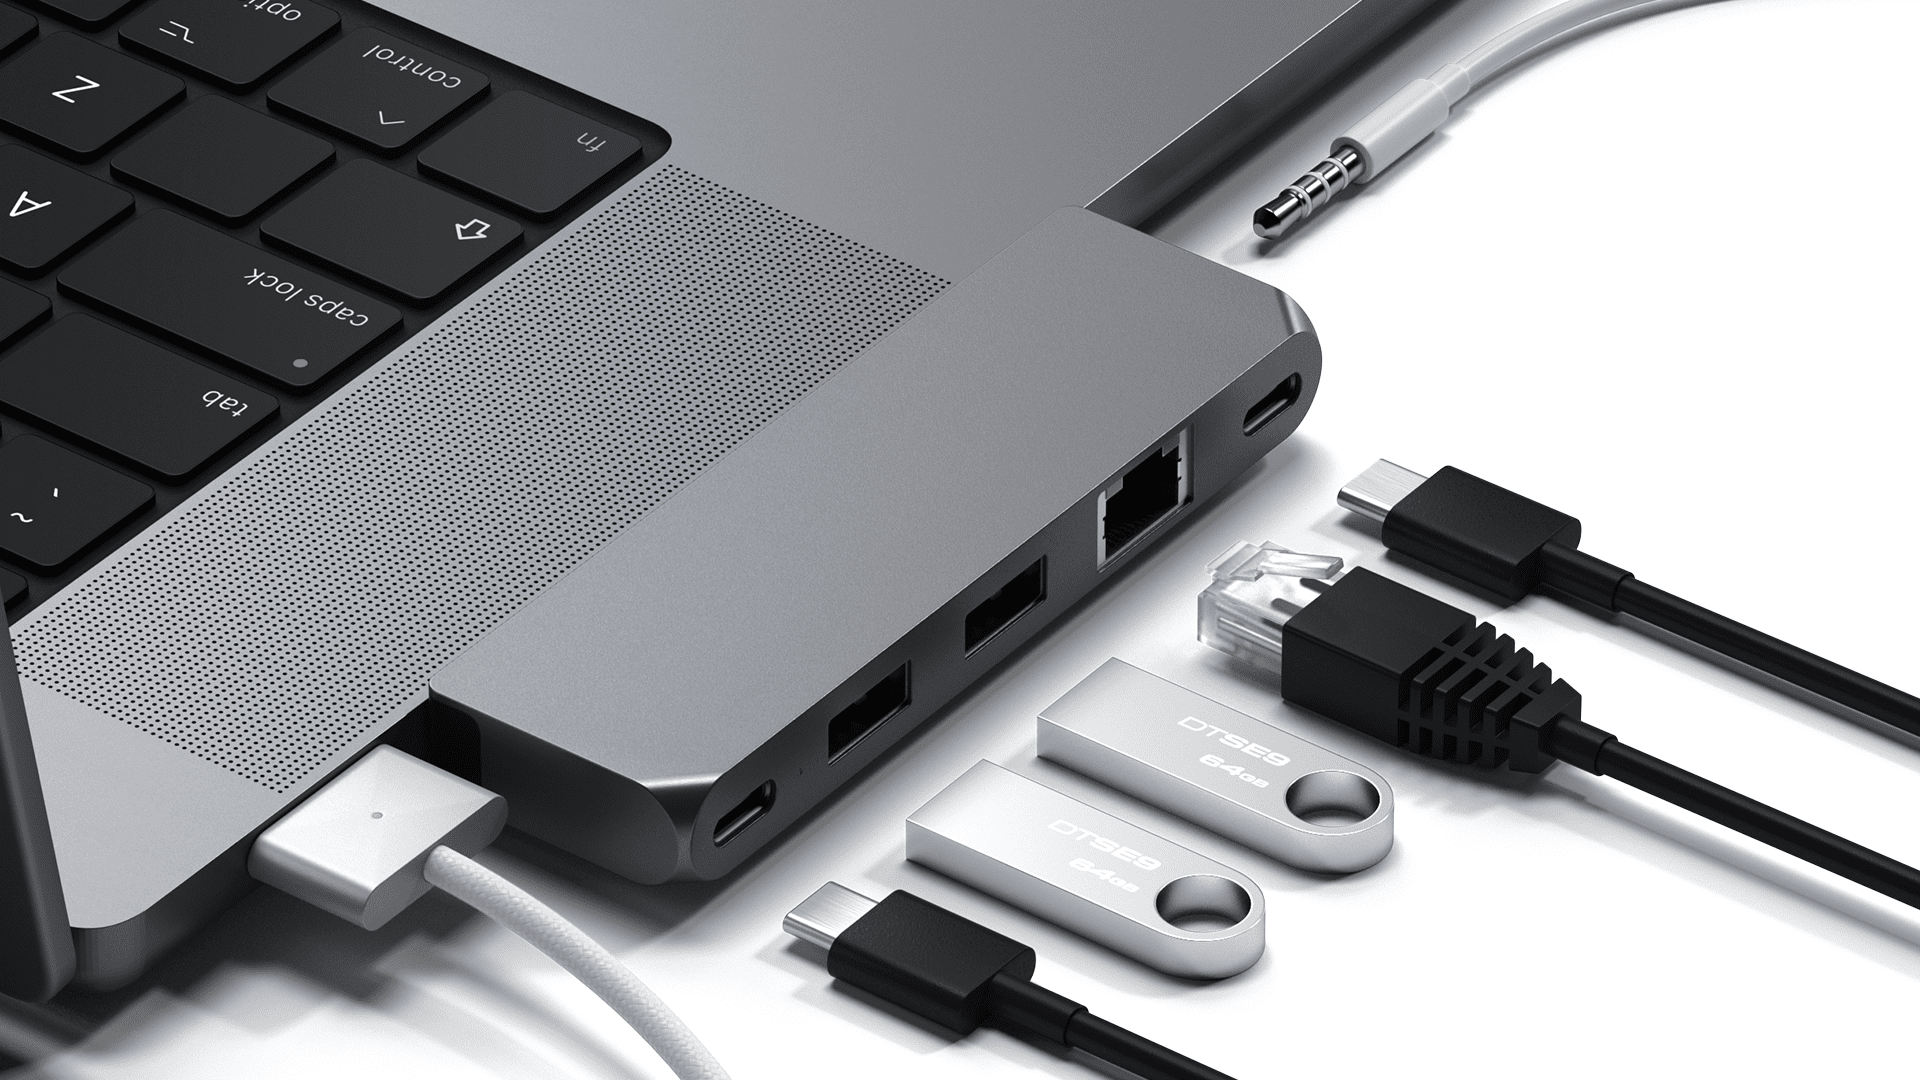 Thêm nhiều cổng hơn nữa cho MacBook Pro mới của bạn với Satechi's Pro Hub Mini